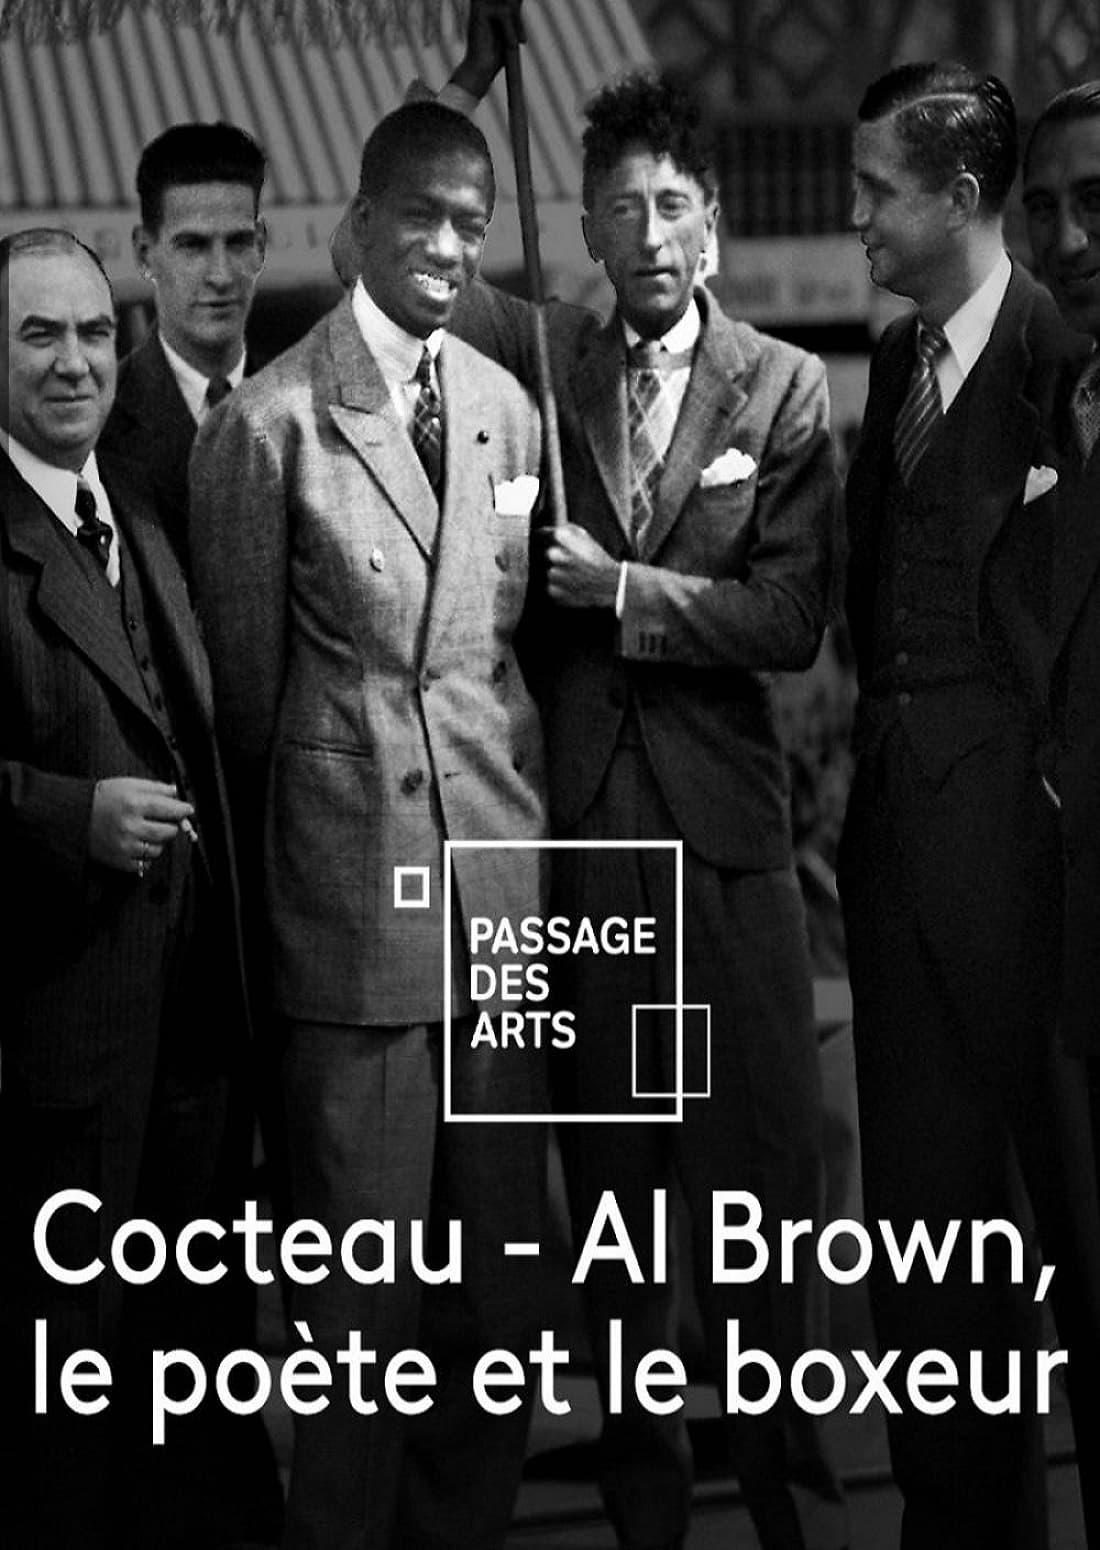 Cocteau - Al Brown: le poète et le boxeur poster